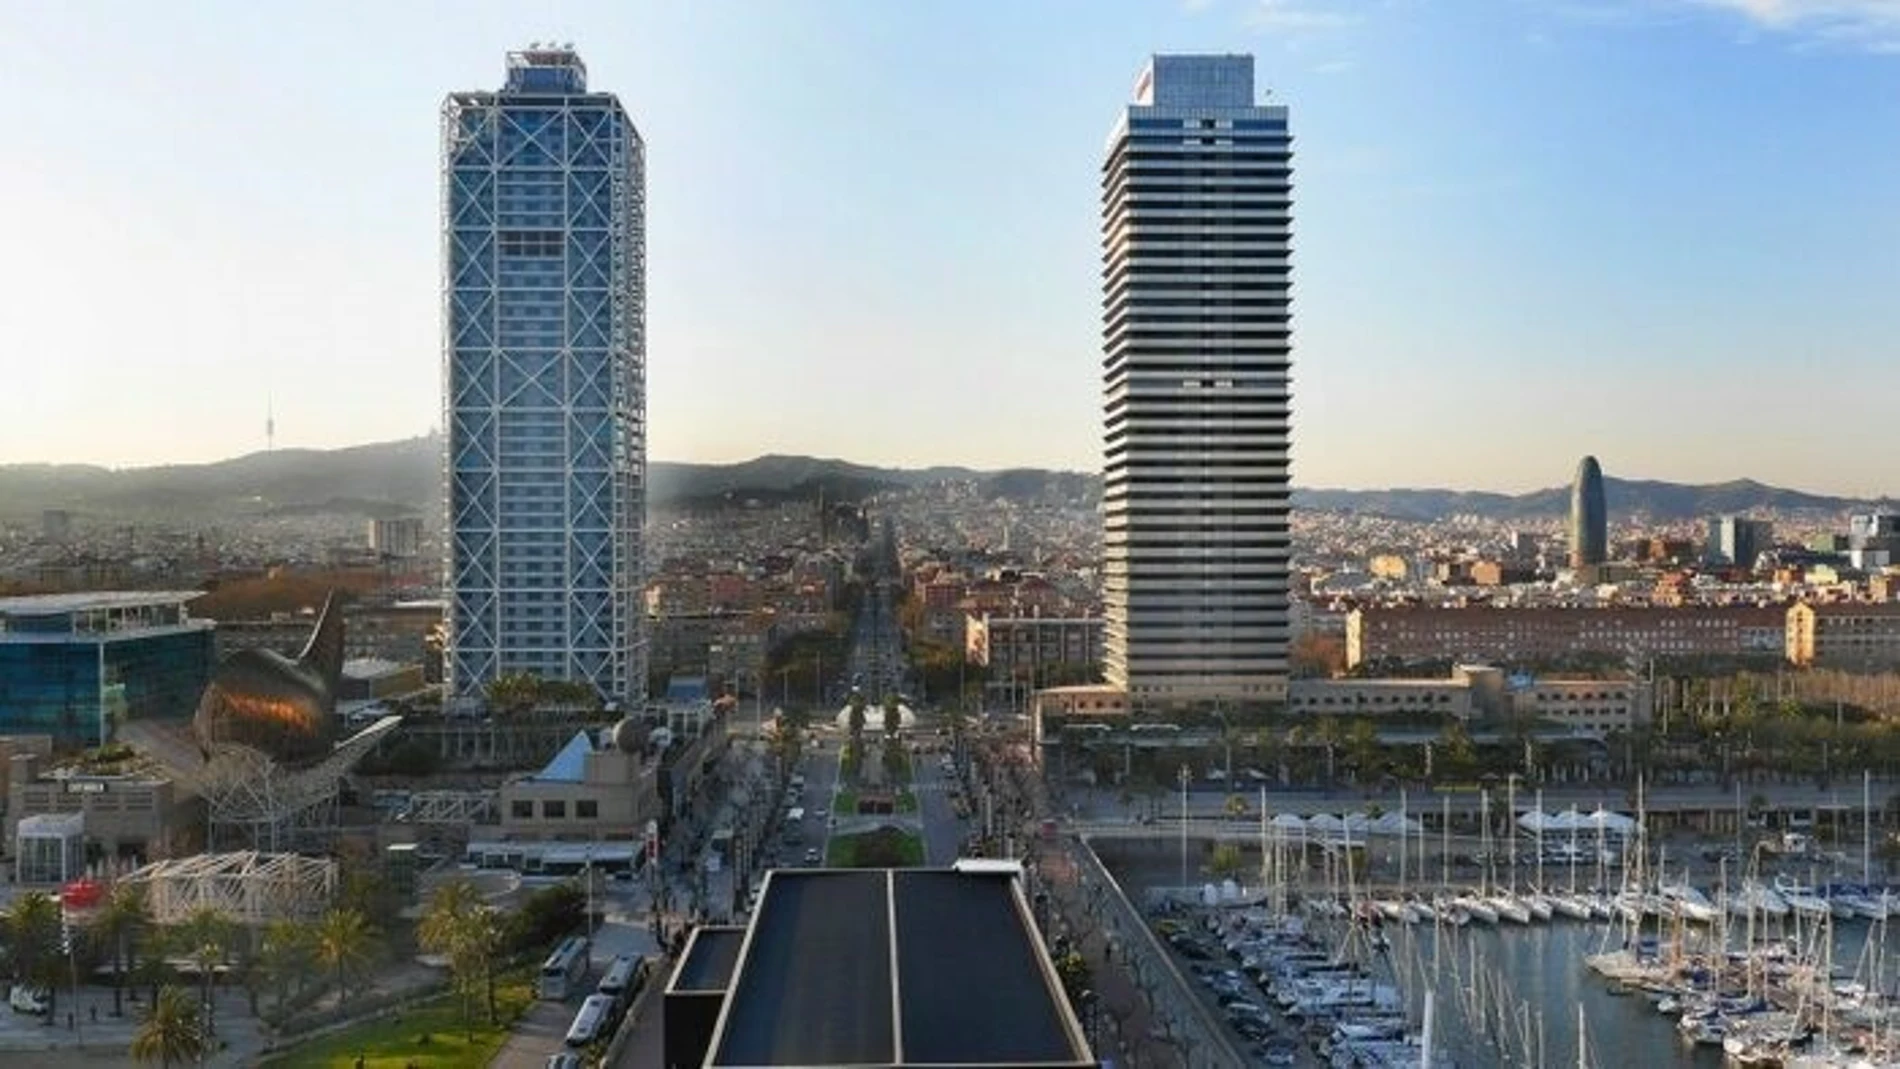 Vista aérea de la ciudad de Barcelona.
AJUNTAMENT DE BARCELONA
11/05/2023